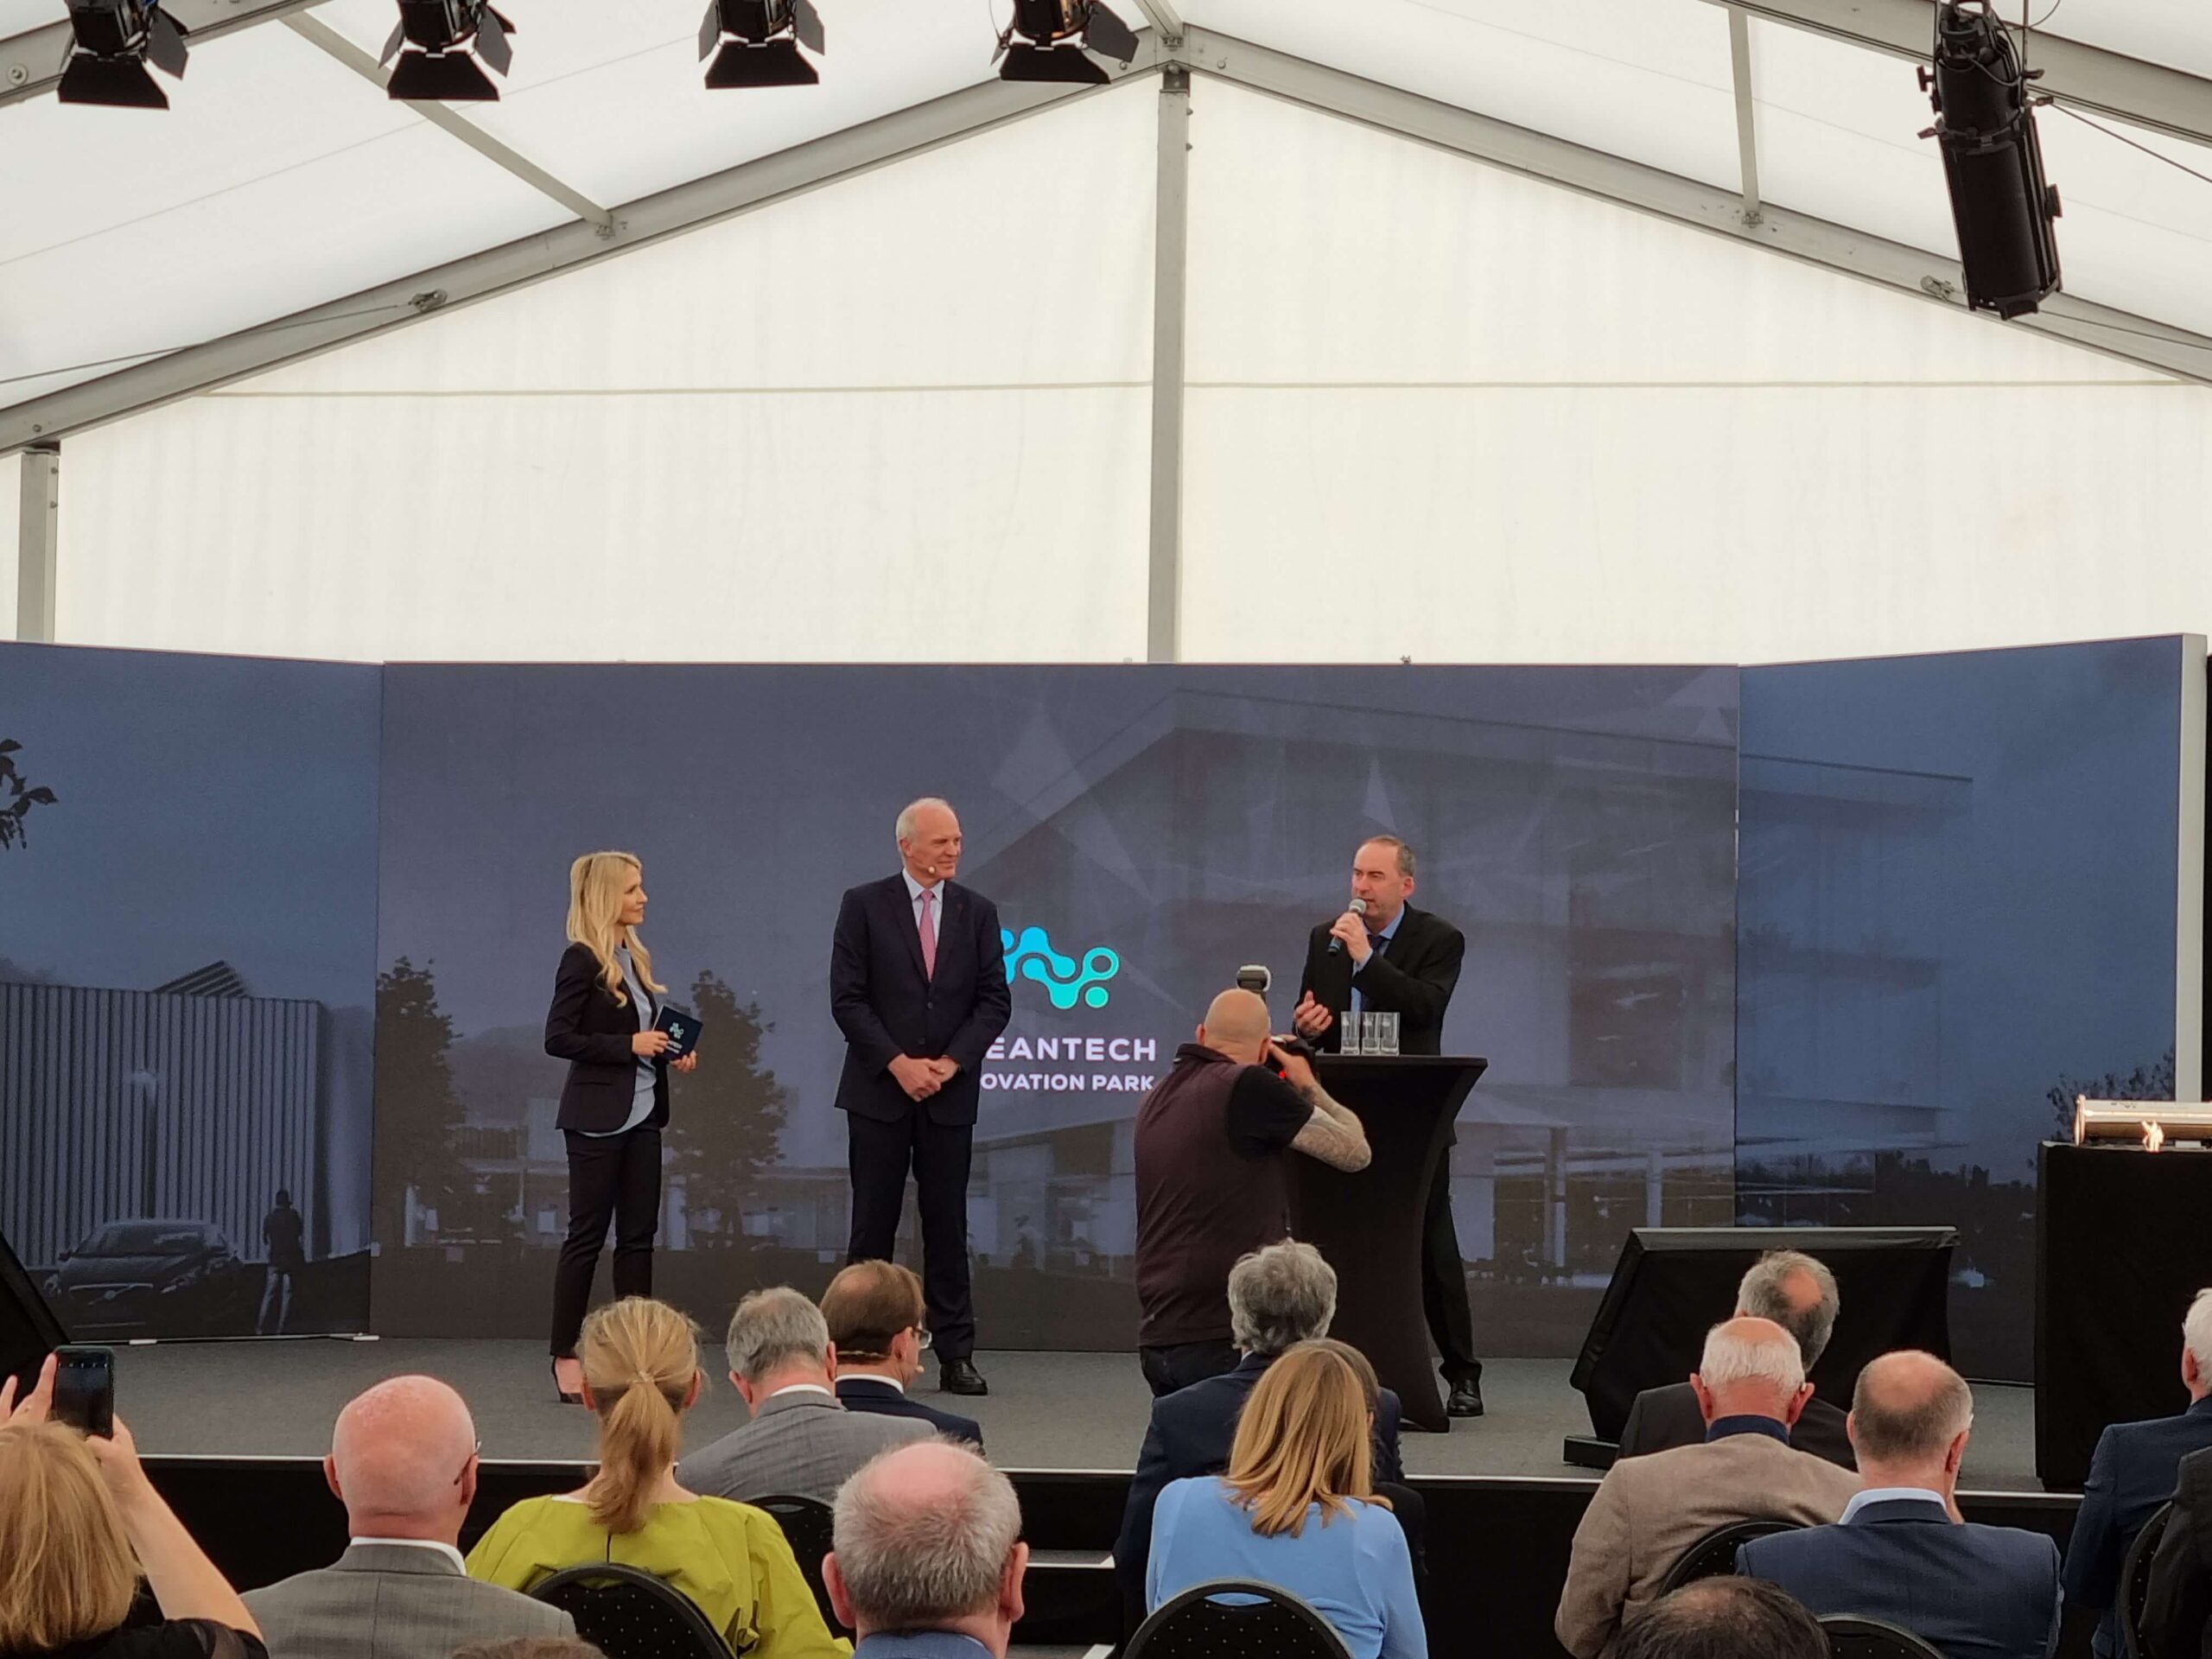 Grundsteinlegung Cleantech Innovation Park Michelin Hallstadt Blick auf Bühne mit Rednern